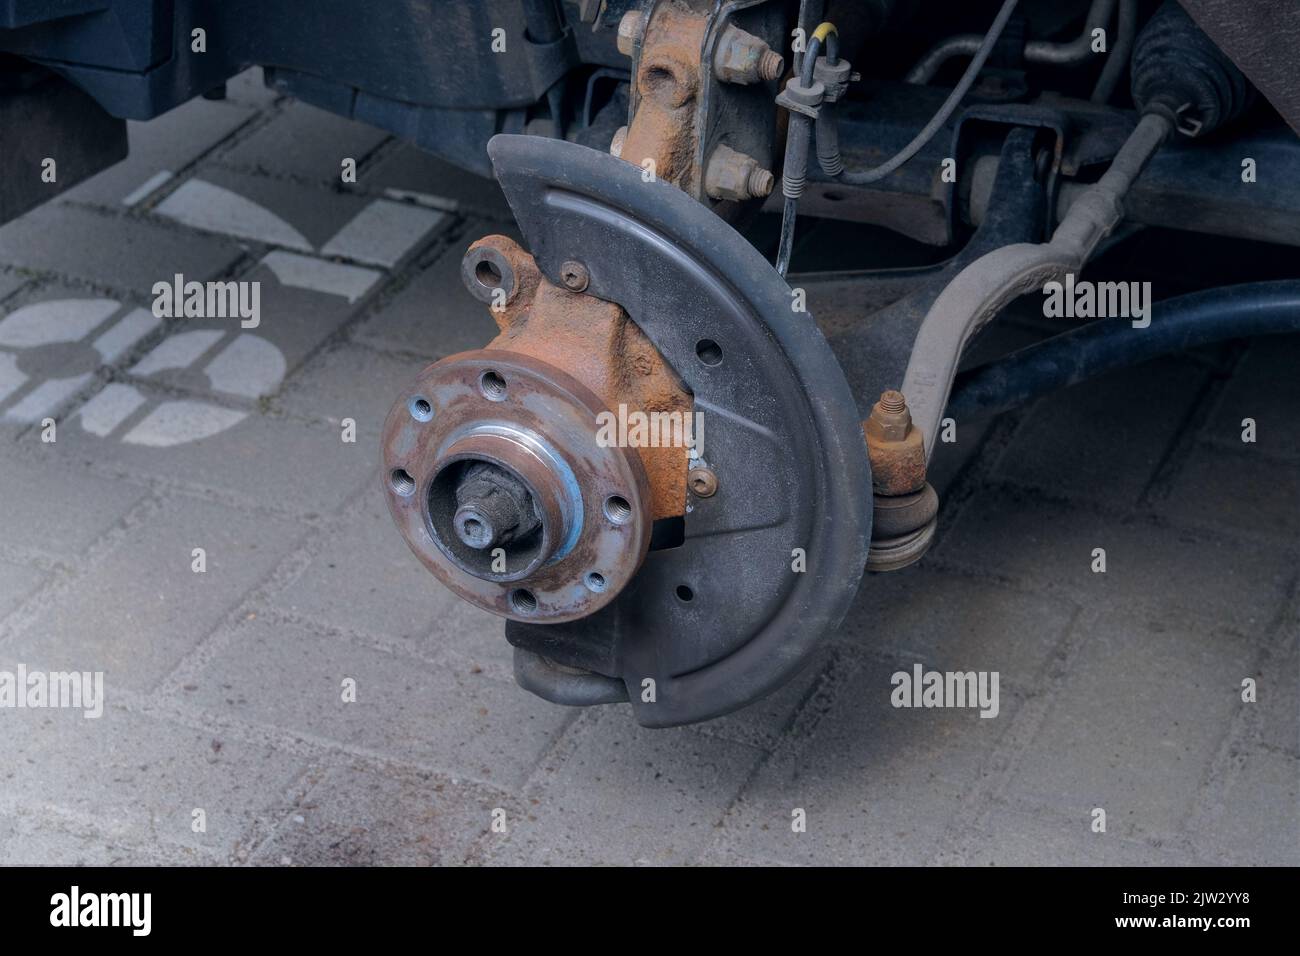 Repair of a wheel on a passenger car. Wheel balancing or repair. Car repair concept. Stock Photo